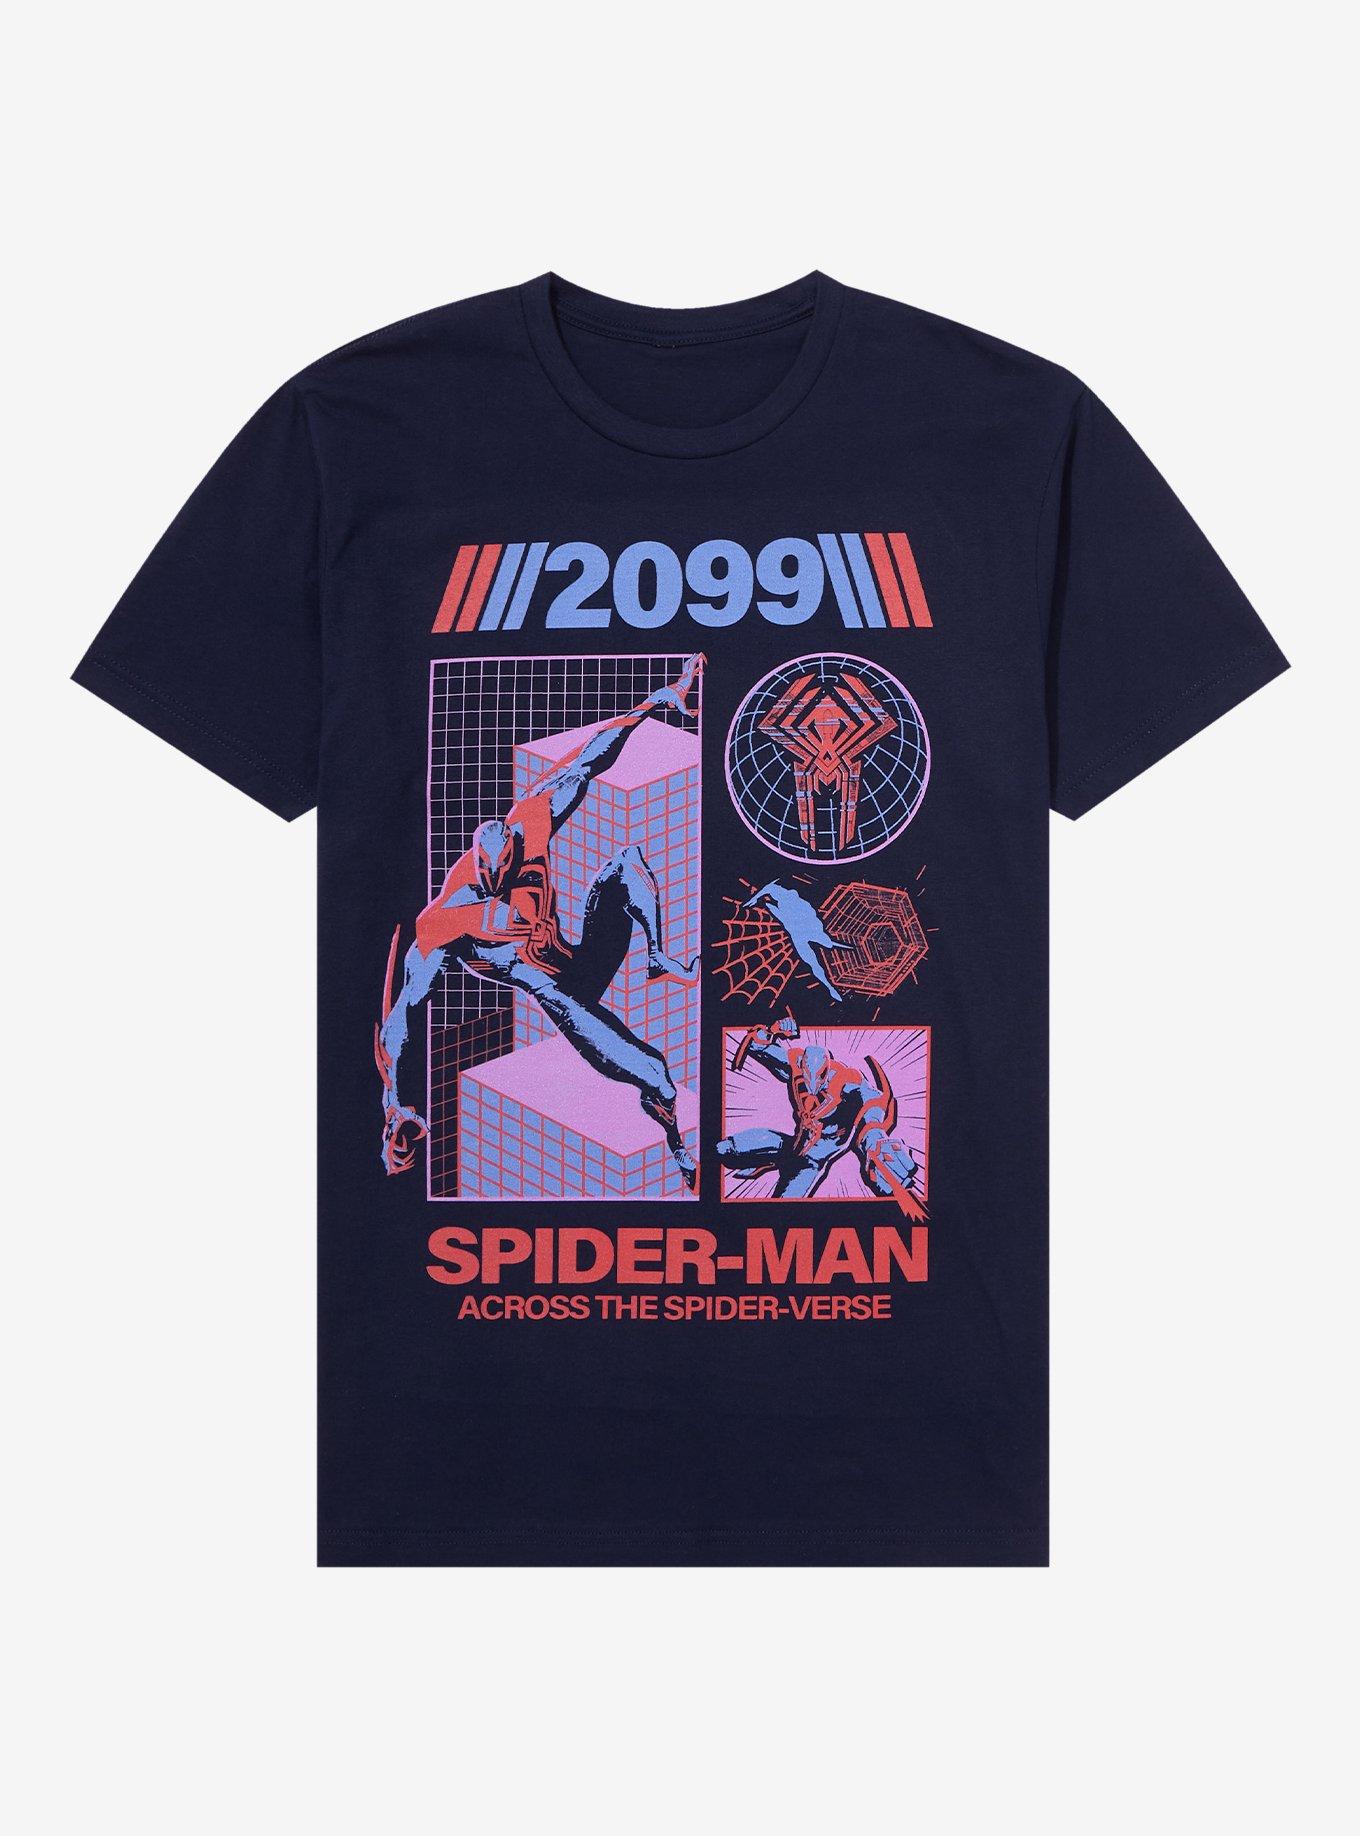 Spiderman 2099 Spider Man Across The Spider Verse, spider-man